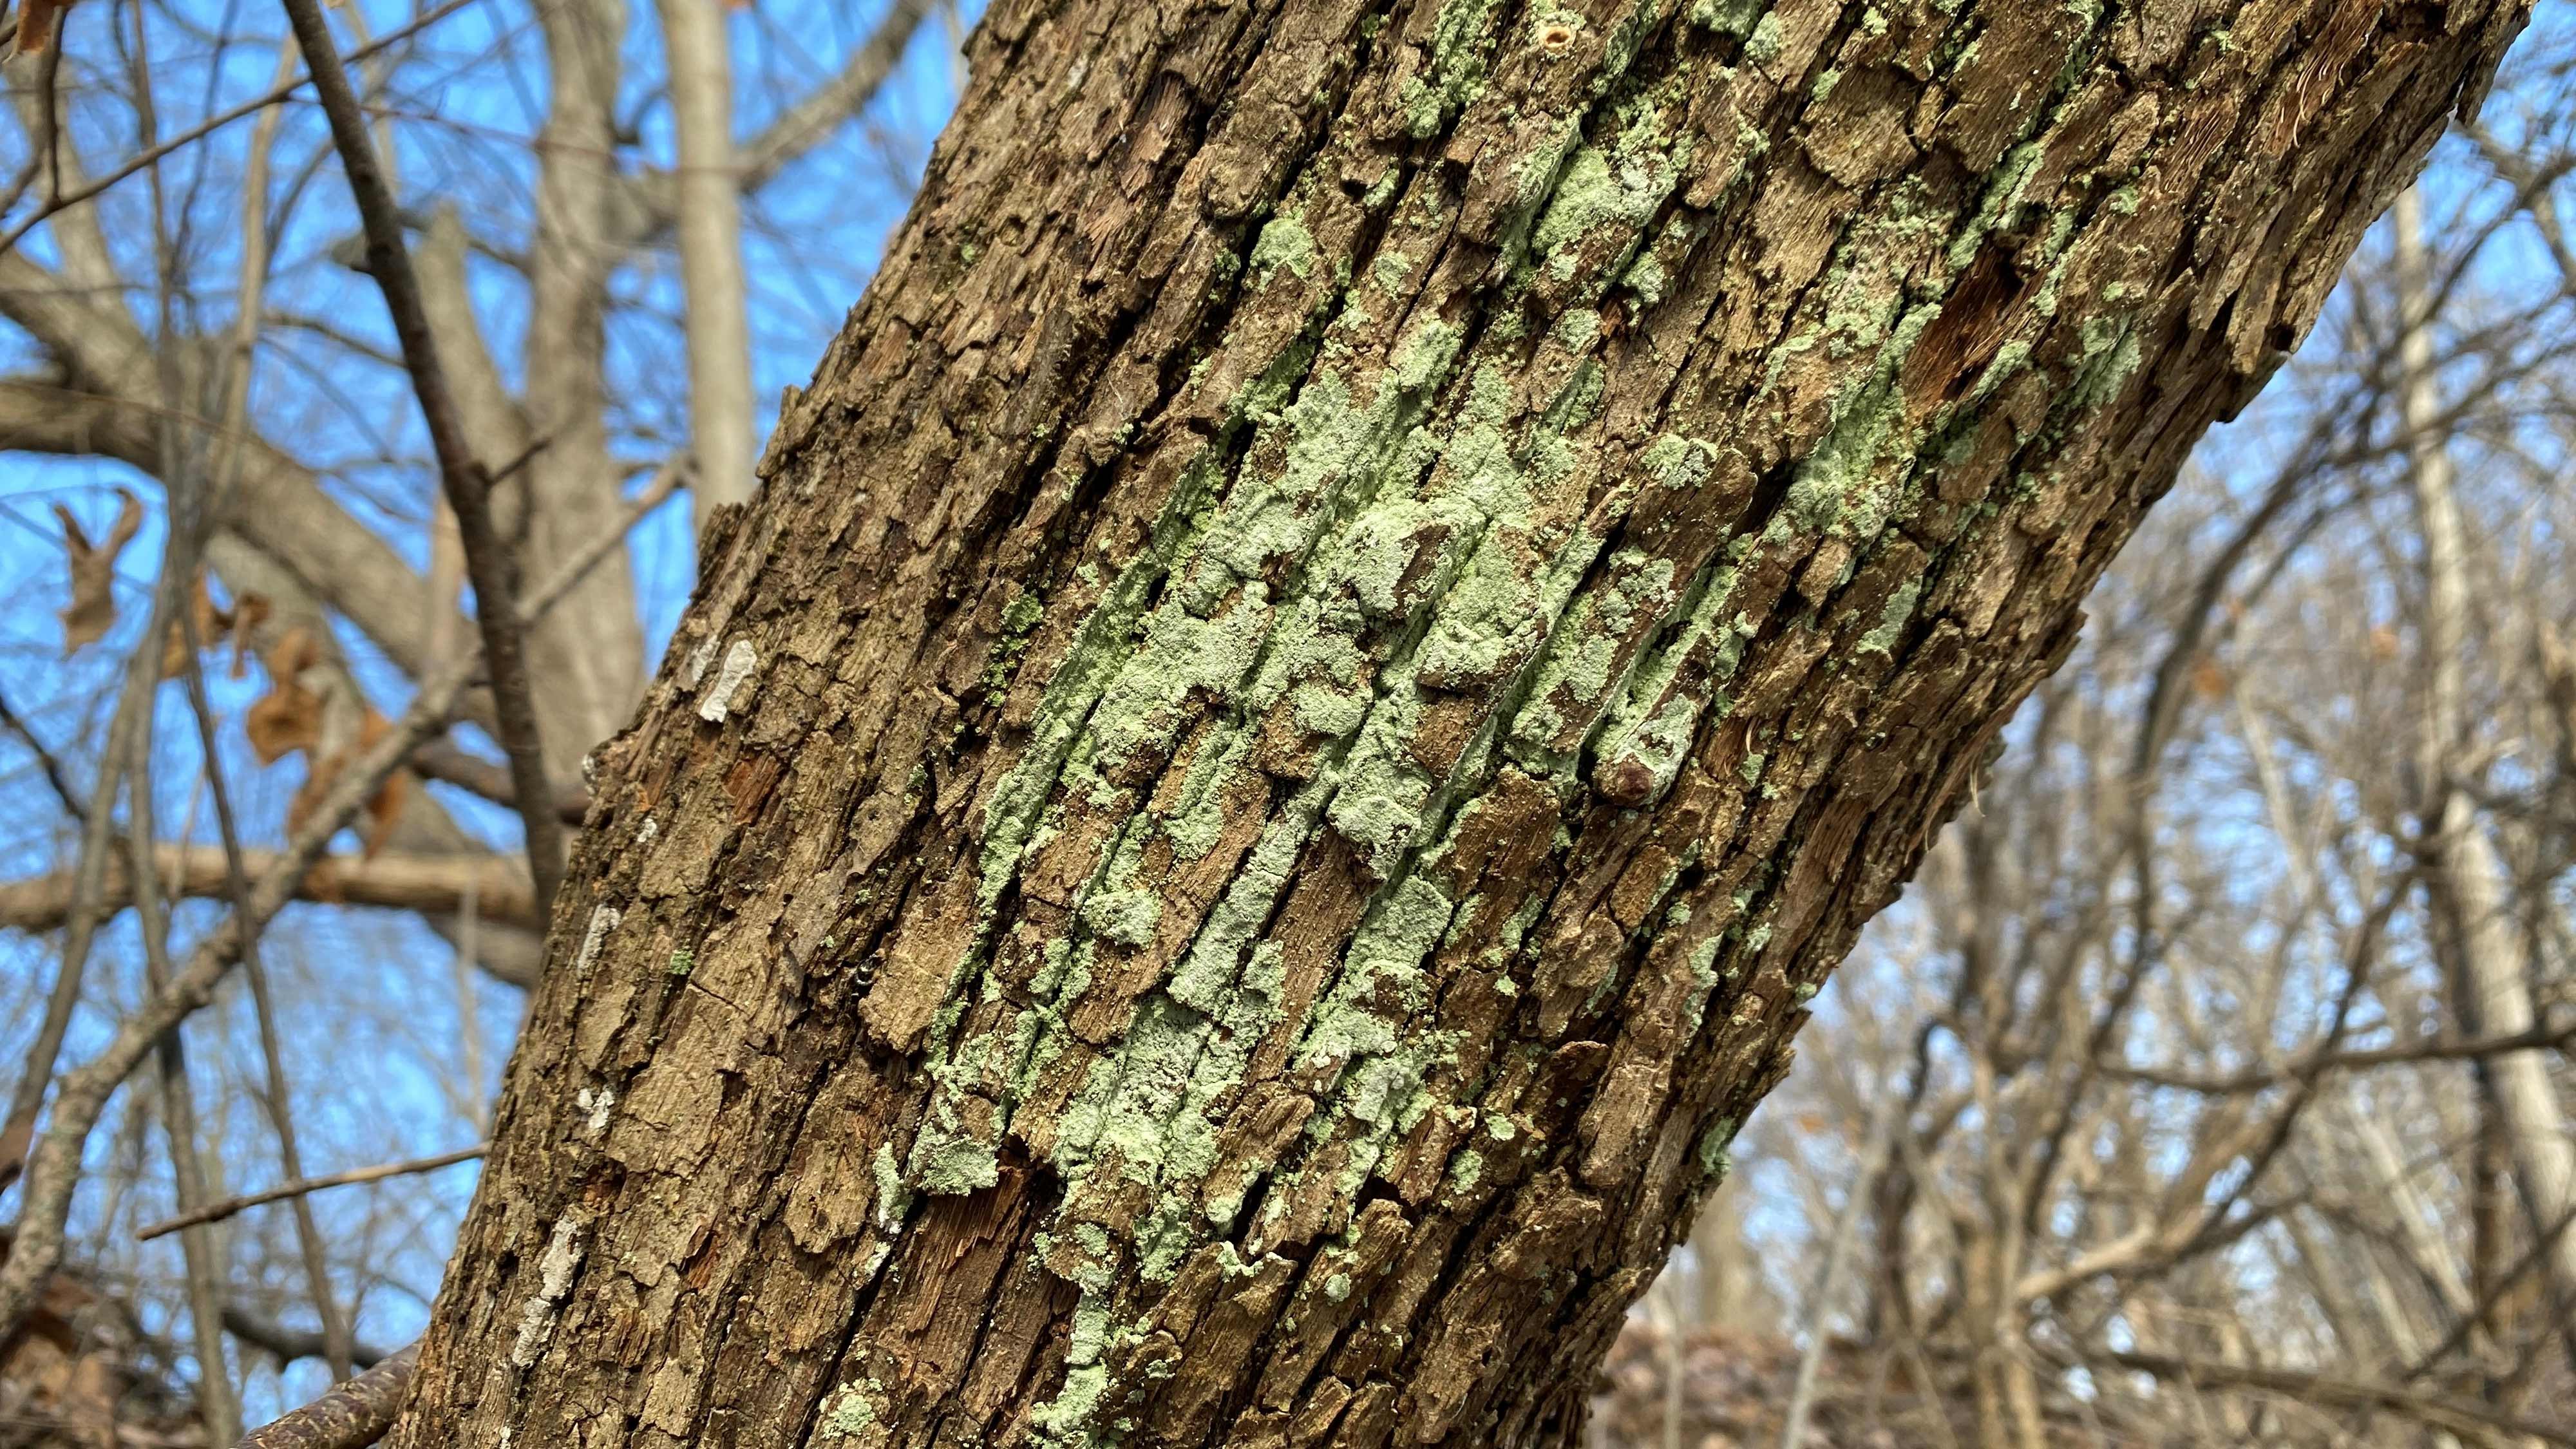 Lichen on tree bark.